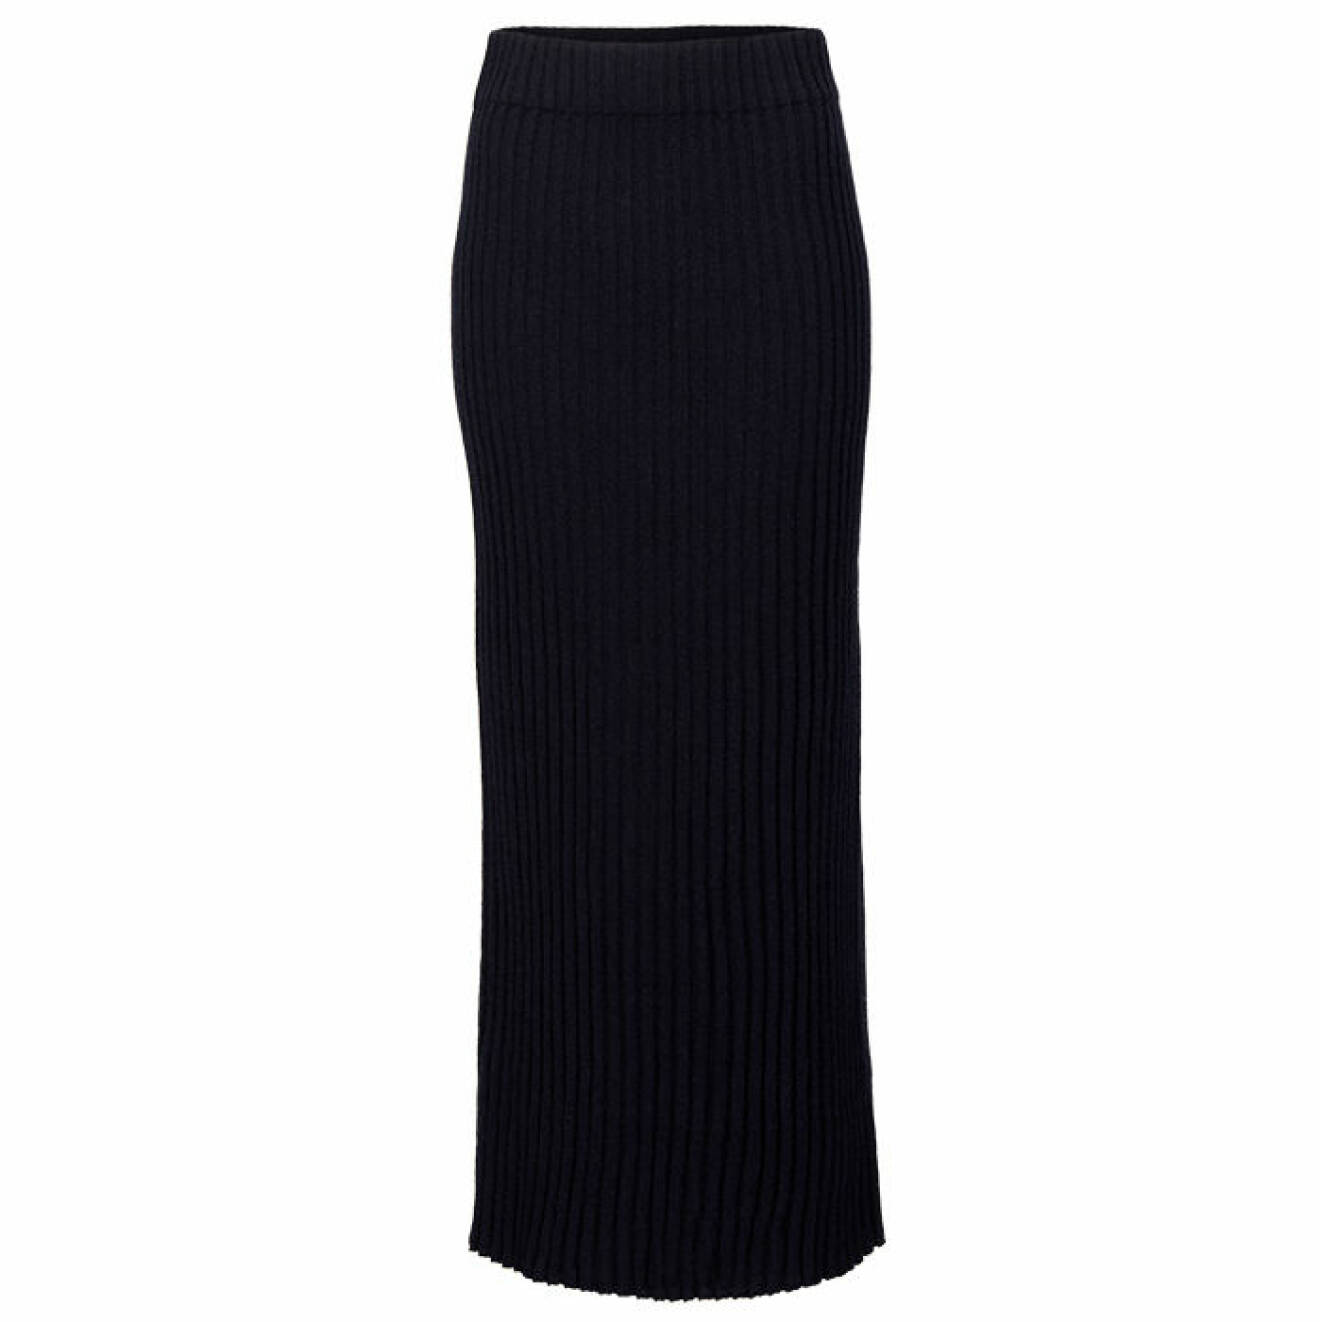 svart ribbstickad kjol i ull från Wakakuu Icons hösten 2021